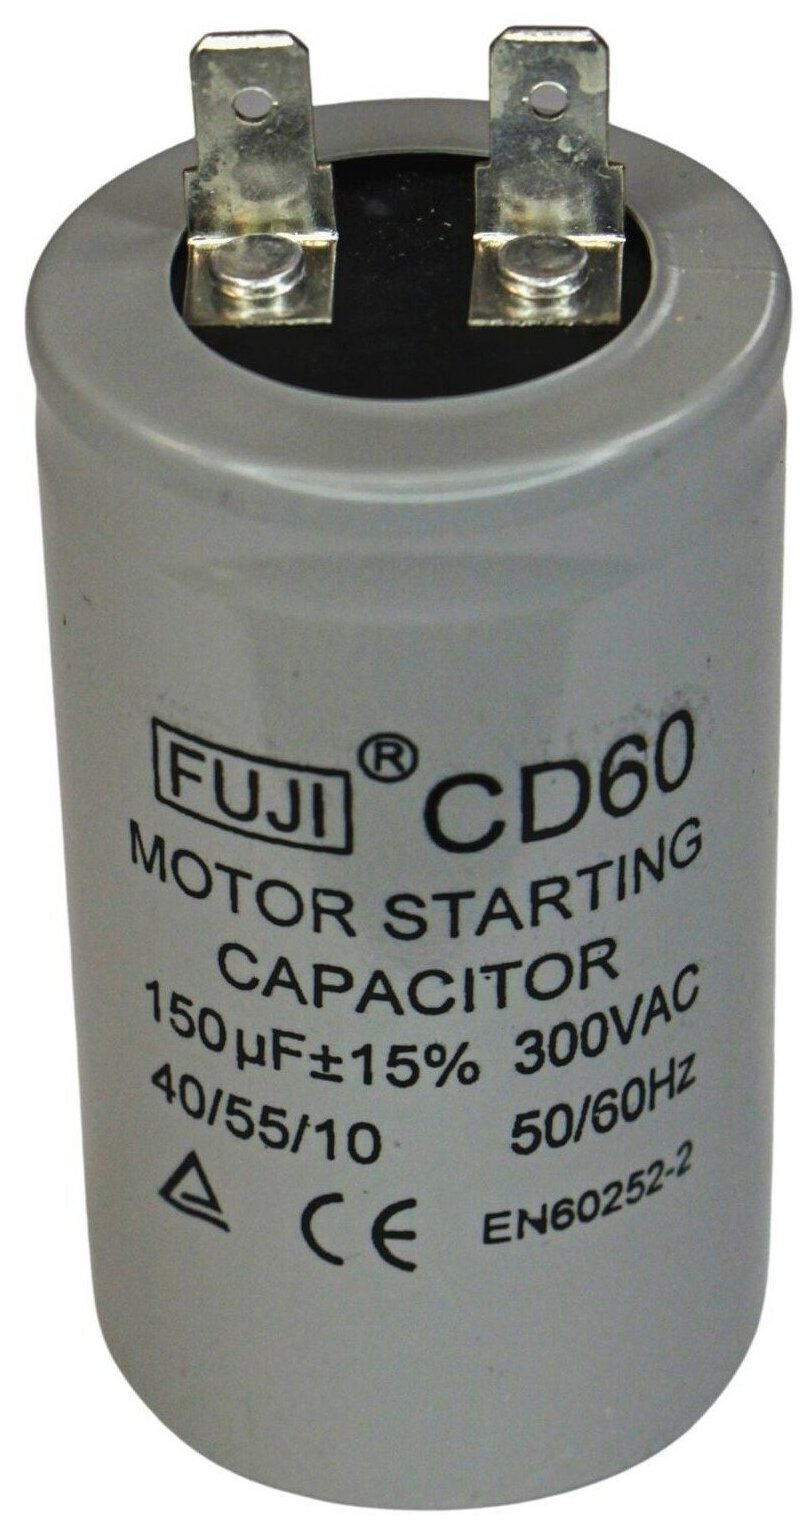 Конденсатор пусковой FUJI CD60 (1+1 PIN) 150 мкФ 300В 40x70 мм алюминий (У)